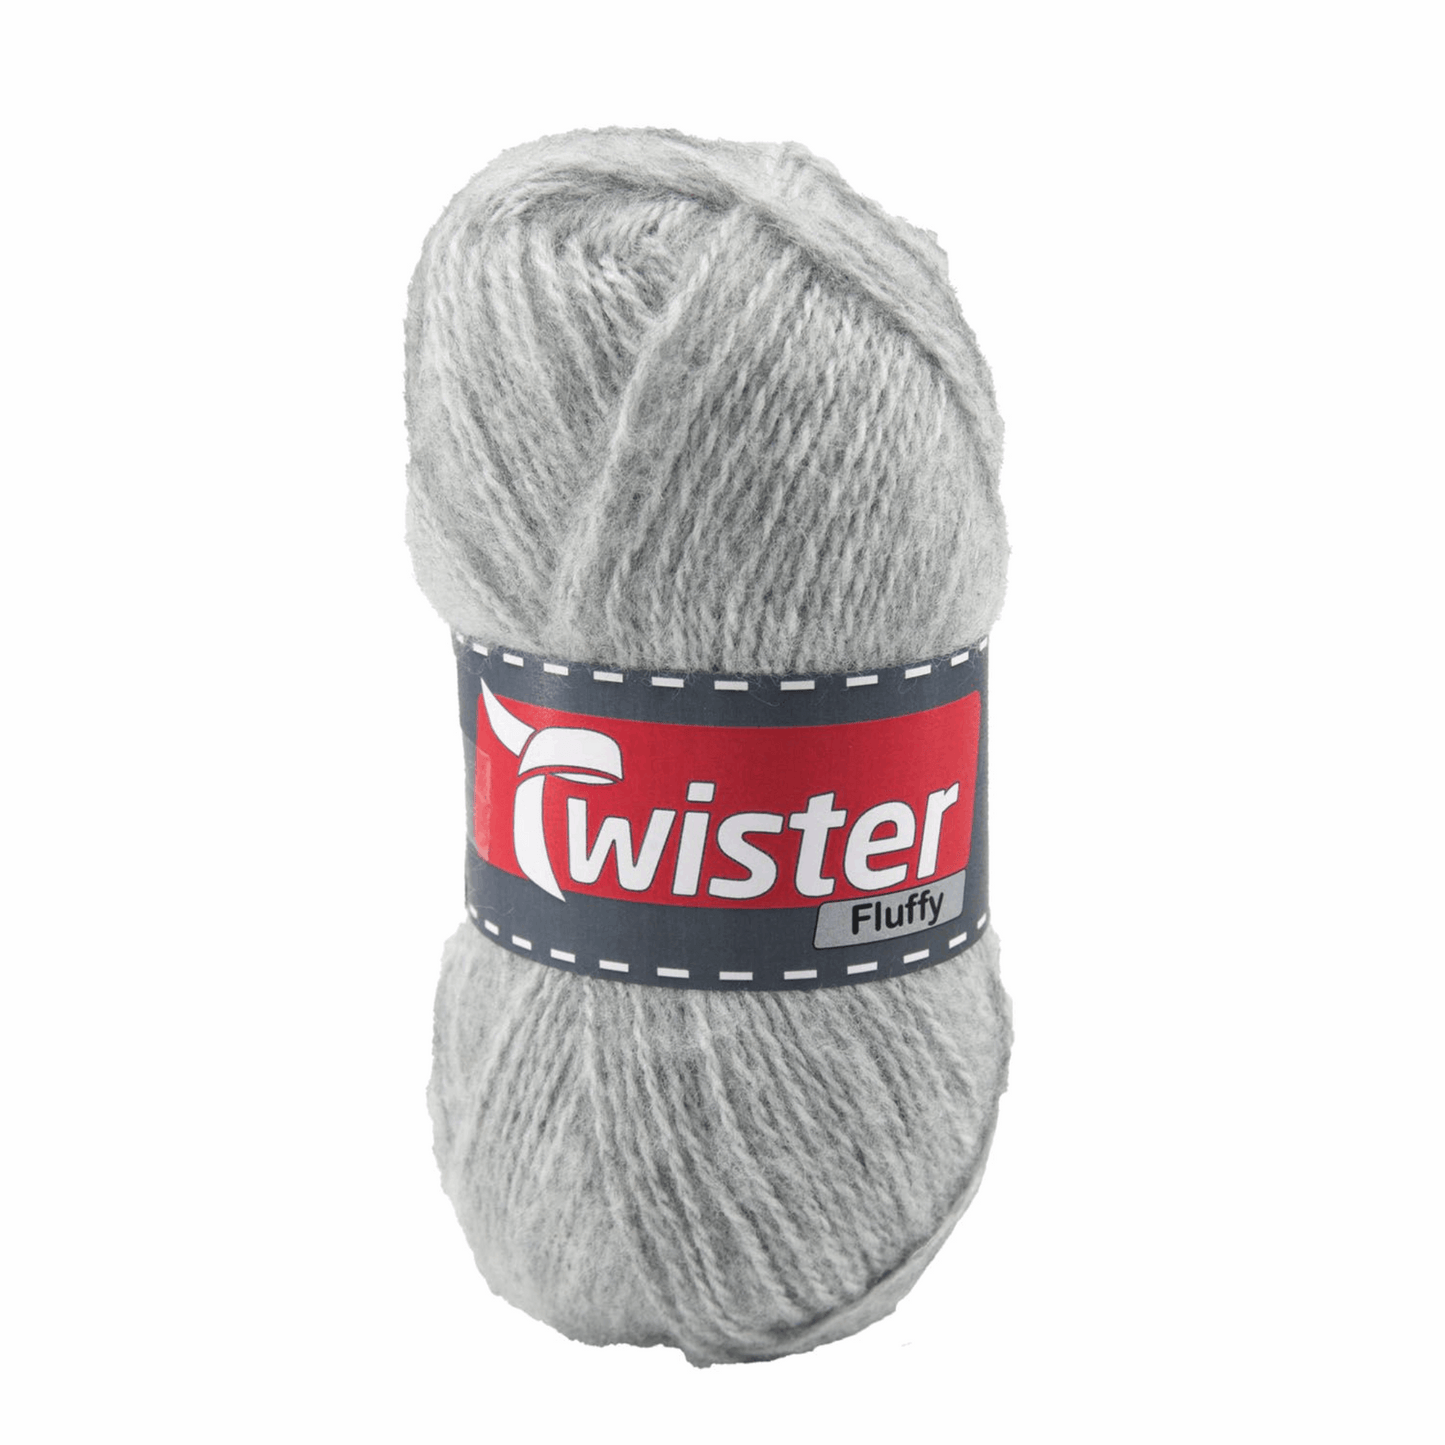 Twister Fluffy, 50g, 98320, Farbe hellgrau 16